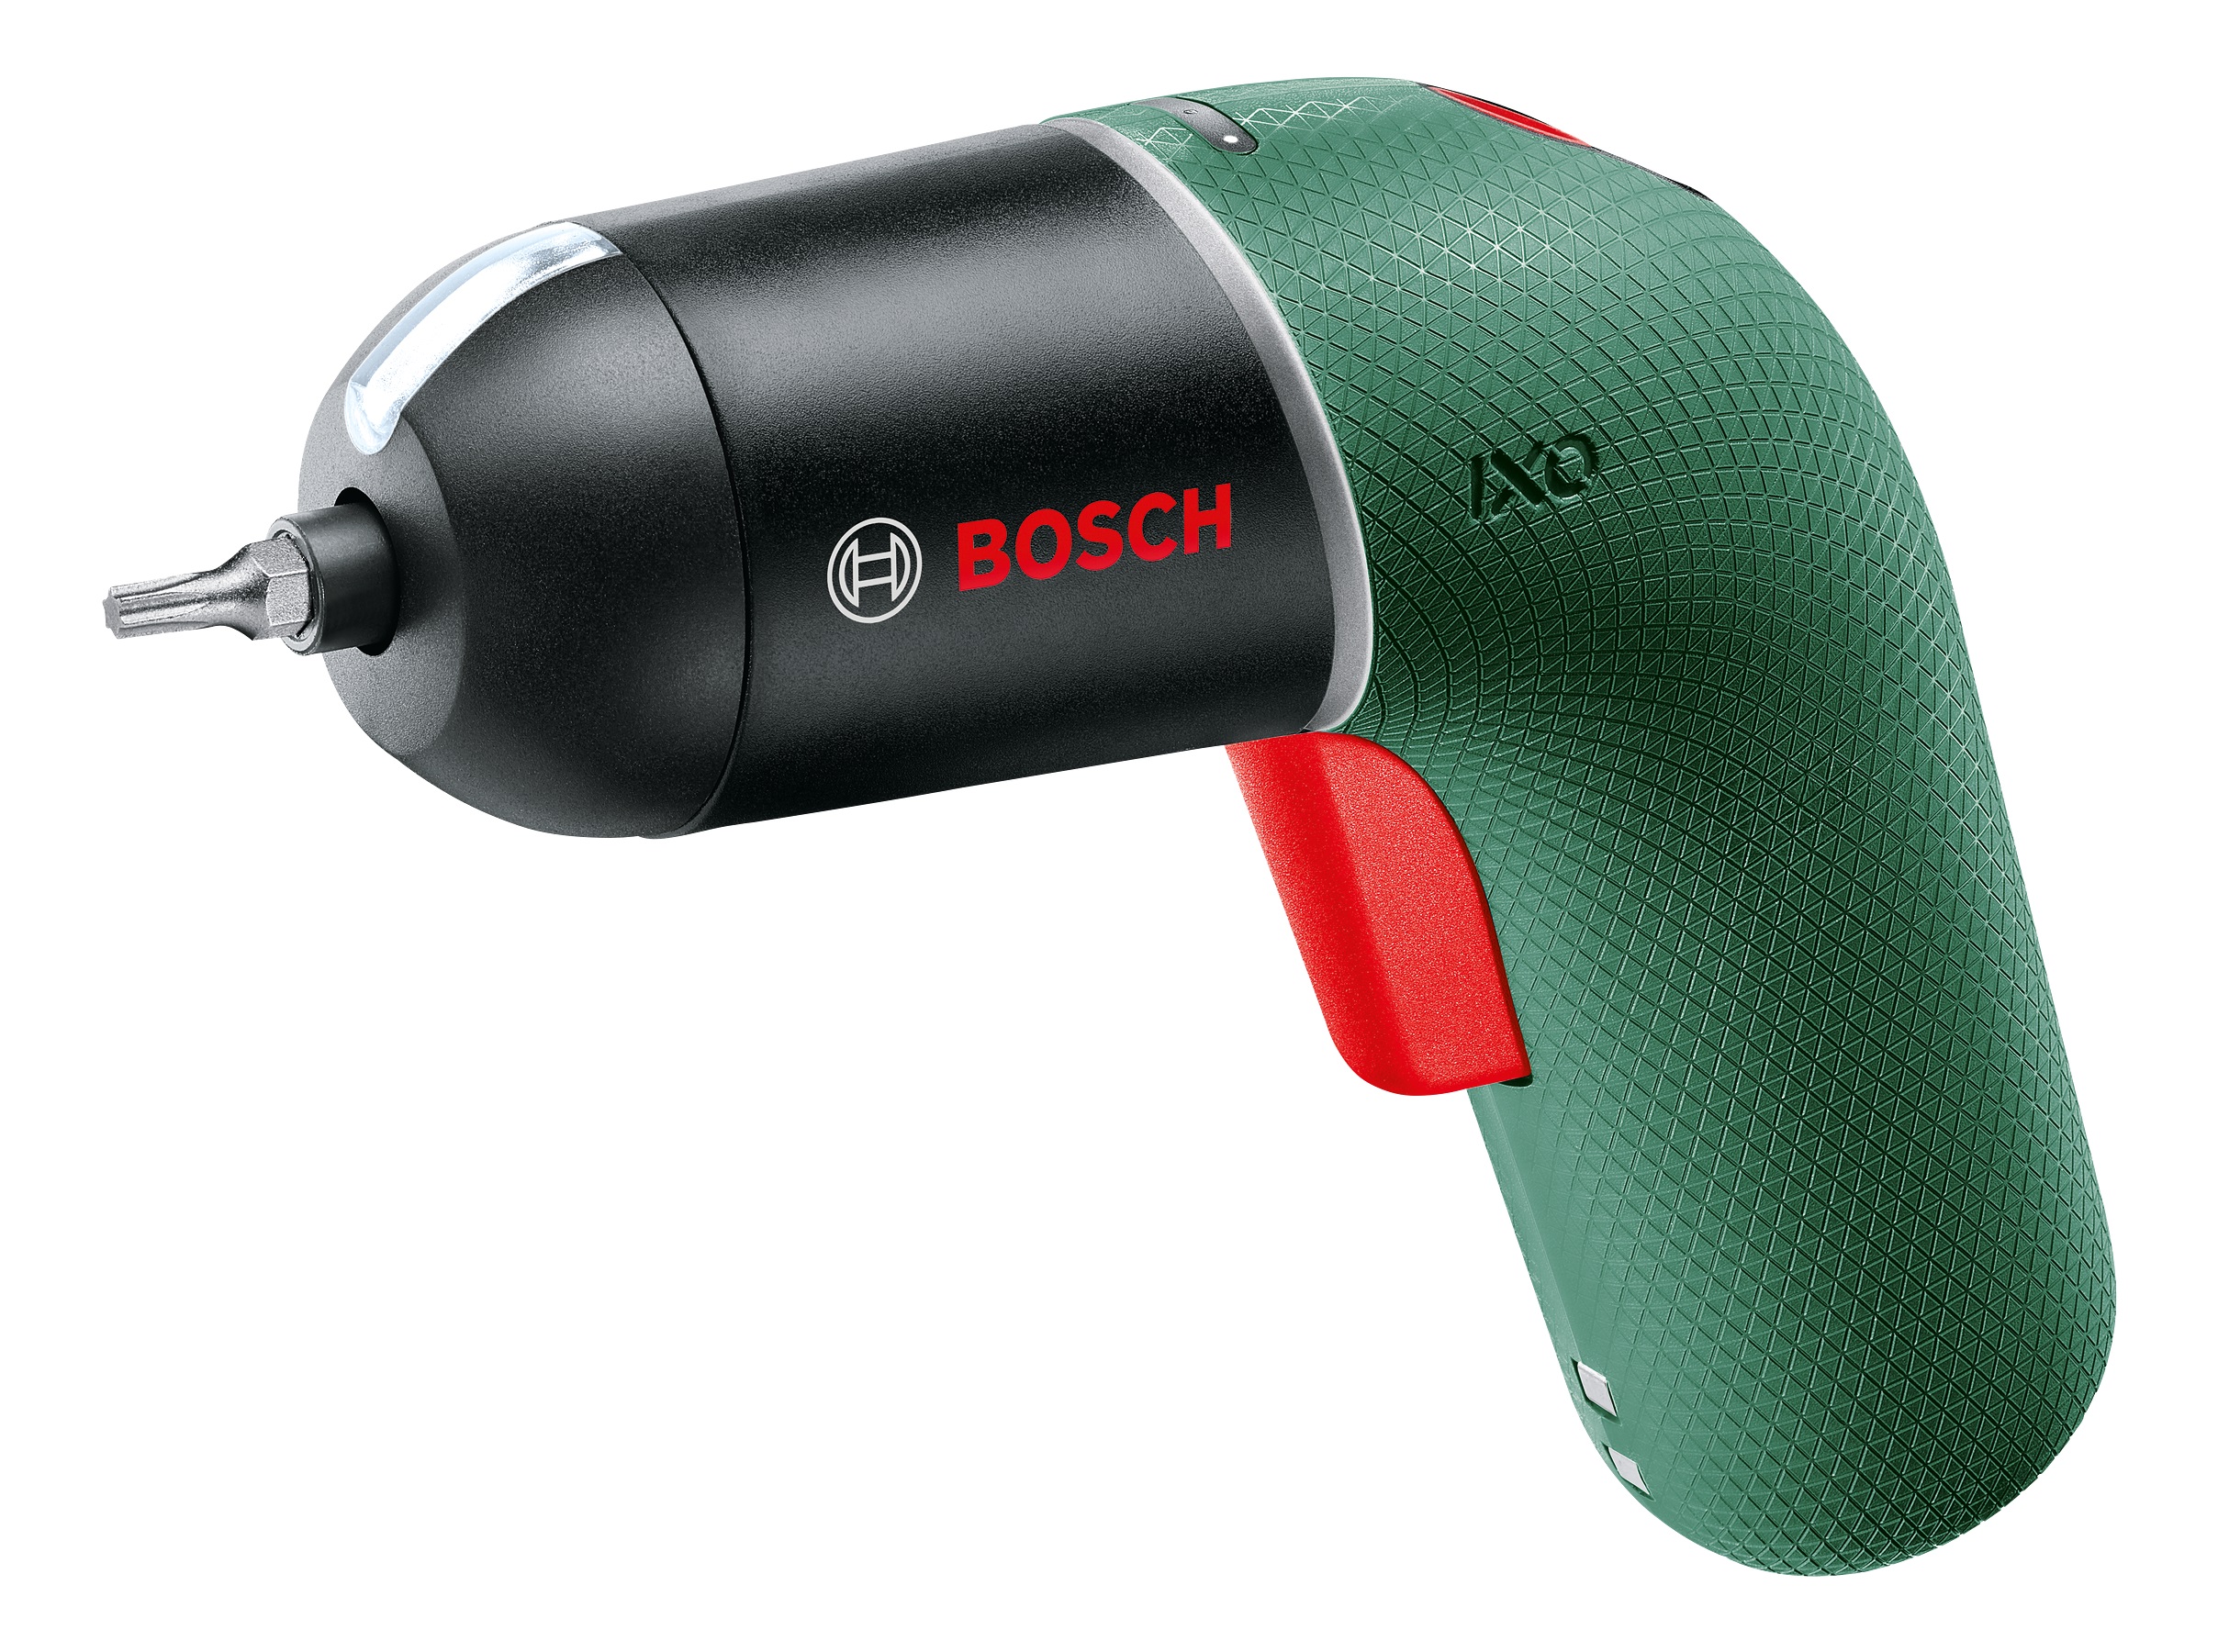 Bosch IXO 6 surubelnita cu acumulator litiu-ion, adaptor unghiular si adaptor excentric